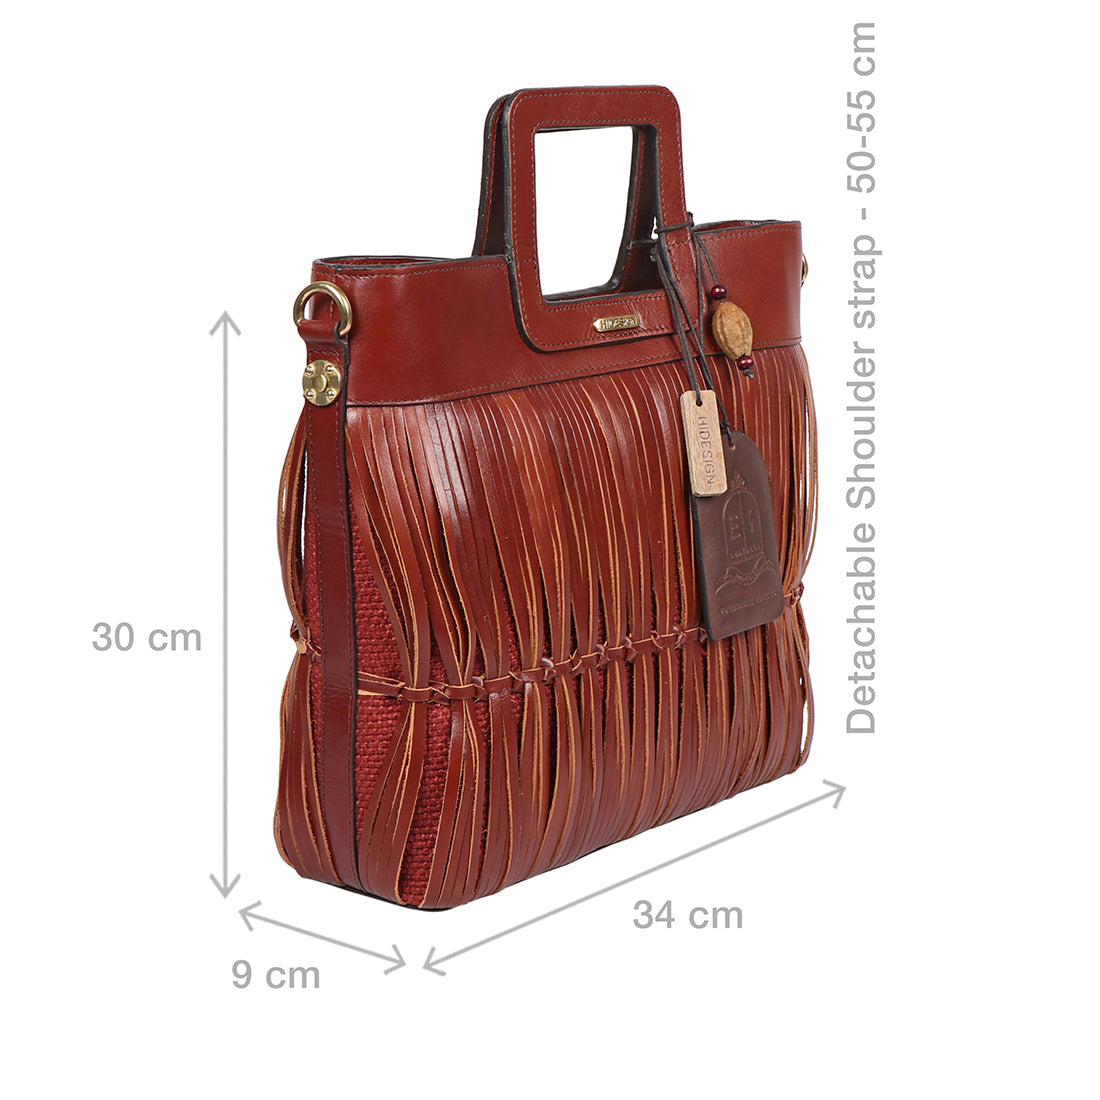 Hidesign Leather Fashion Women's Briefcase Bag/ Shoulder Bag